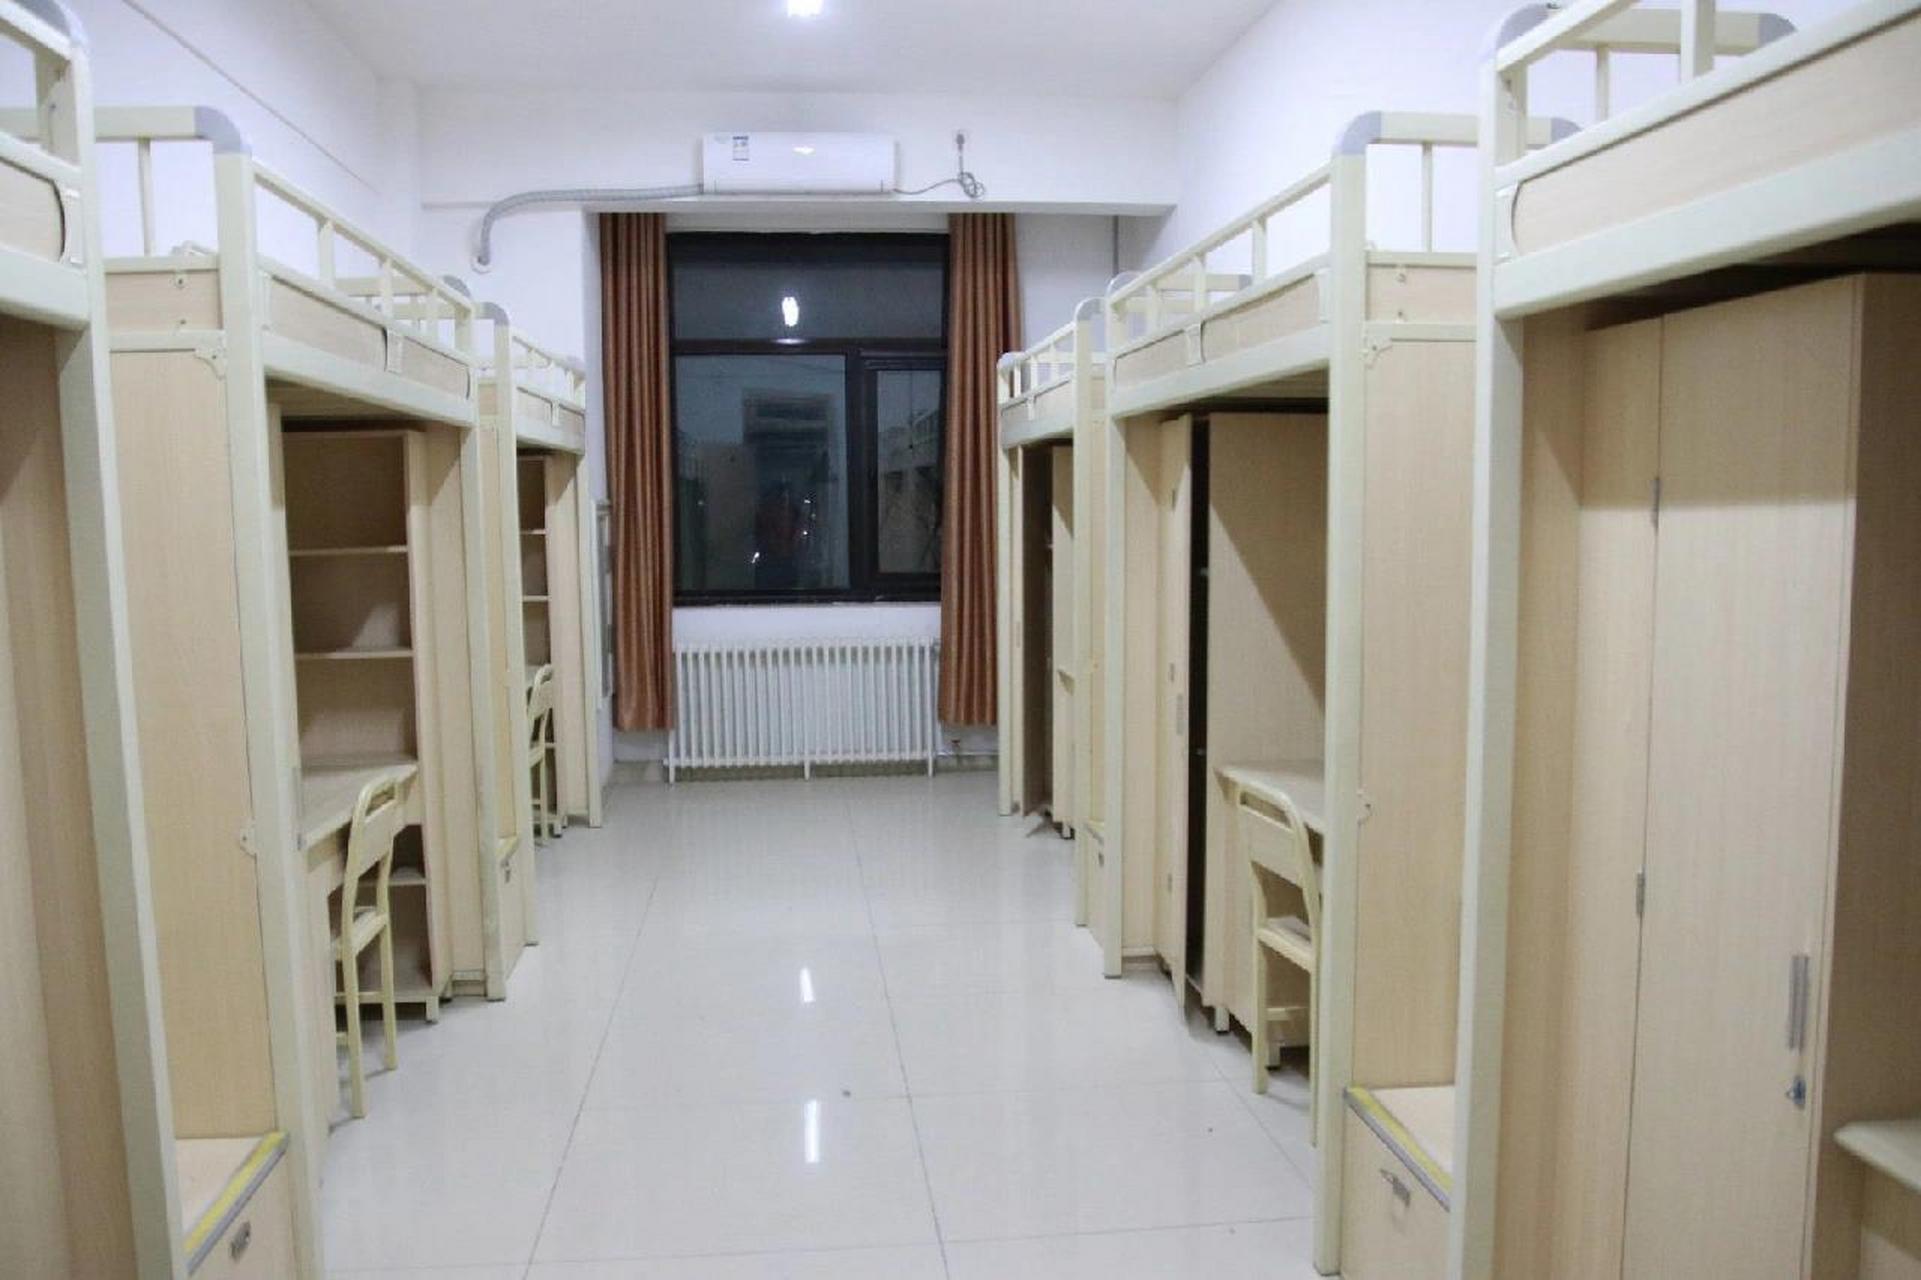 郑州商学院——宿舍篇 商学院宿舍6人间4人间都有,宿舍上床下桌有空调